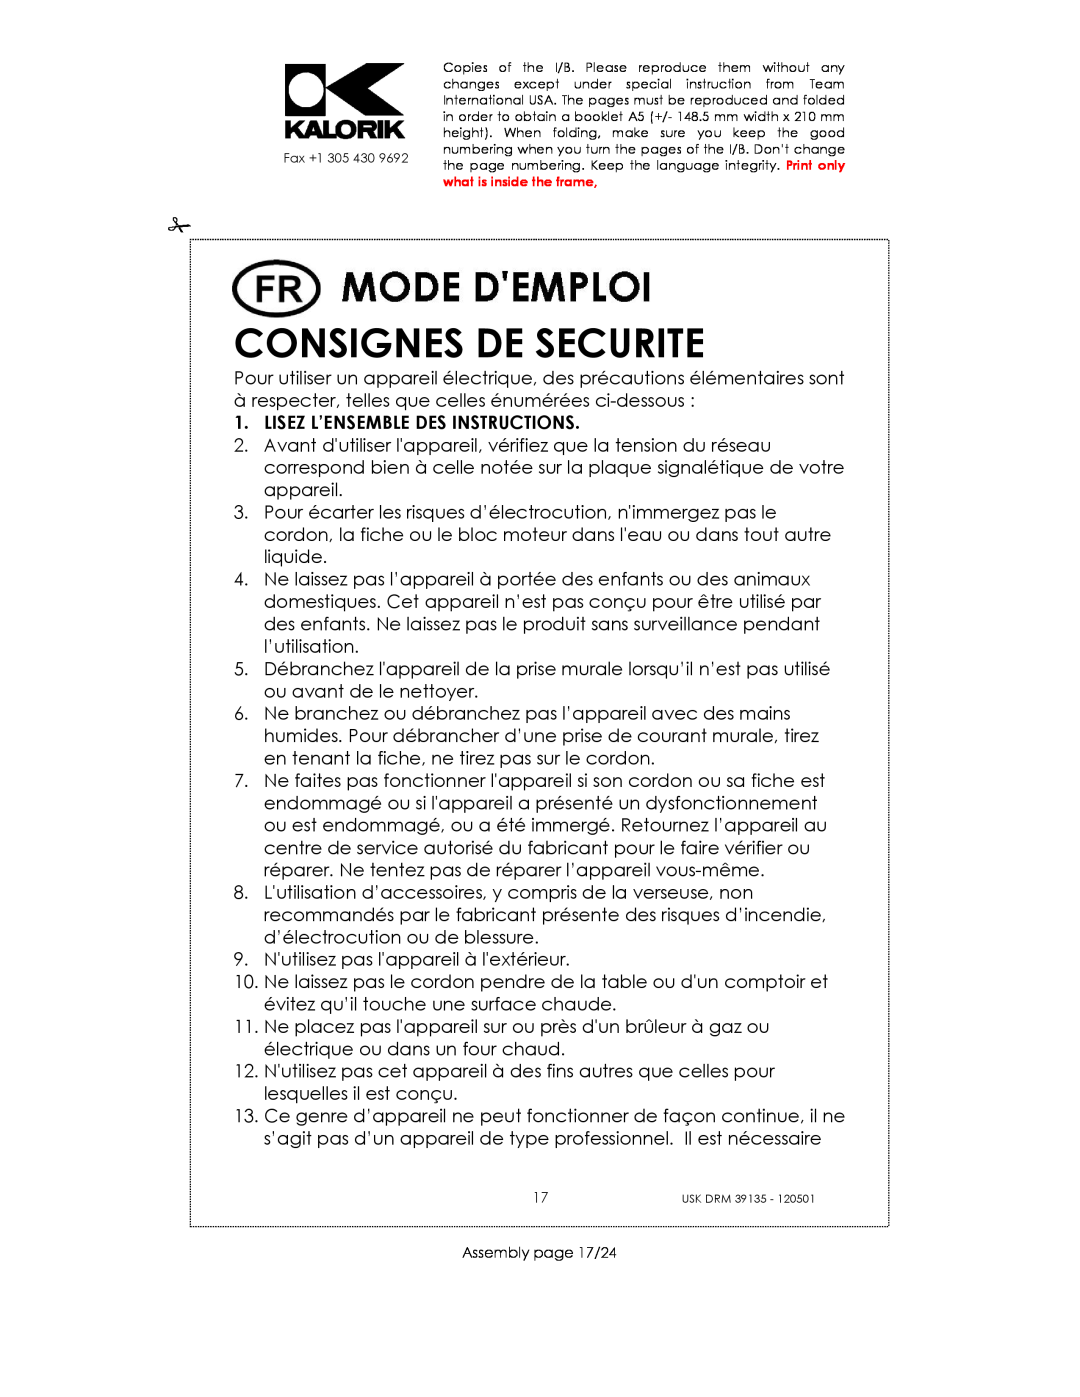 Kalorik USK DRM 39135 manual Consignes De Securite, Lisez L’Ensemble Des Instructions 